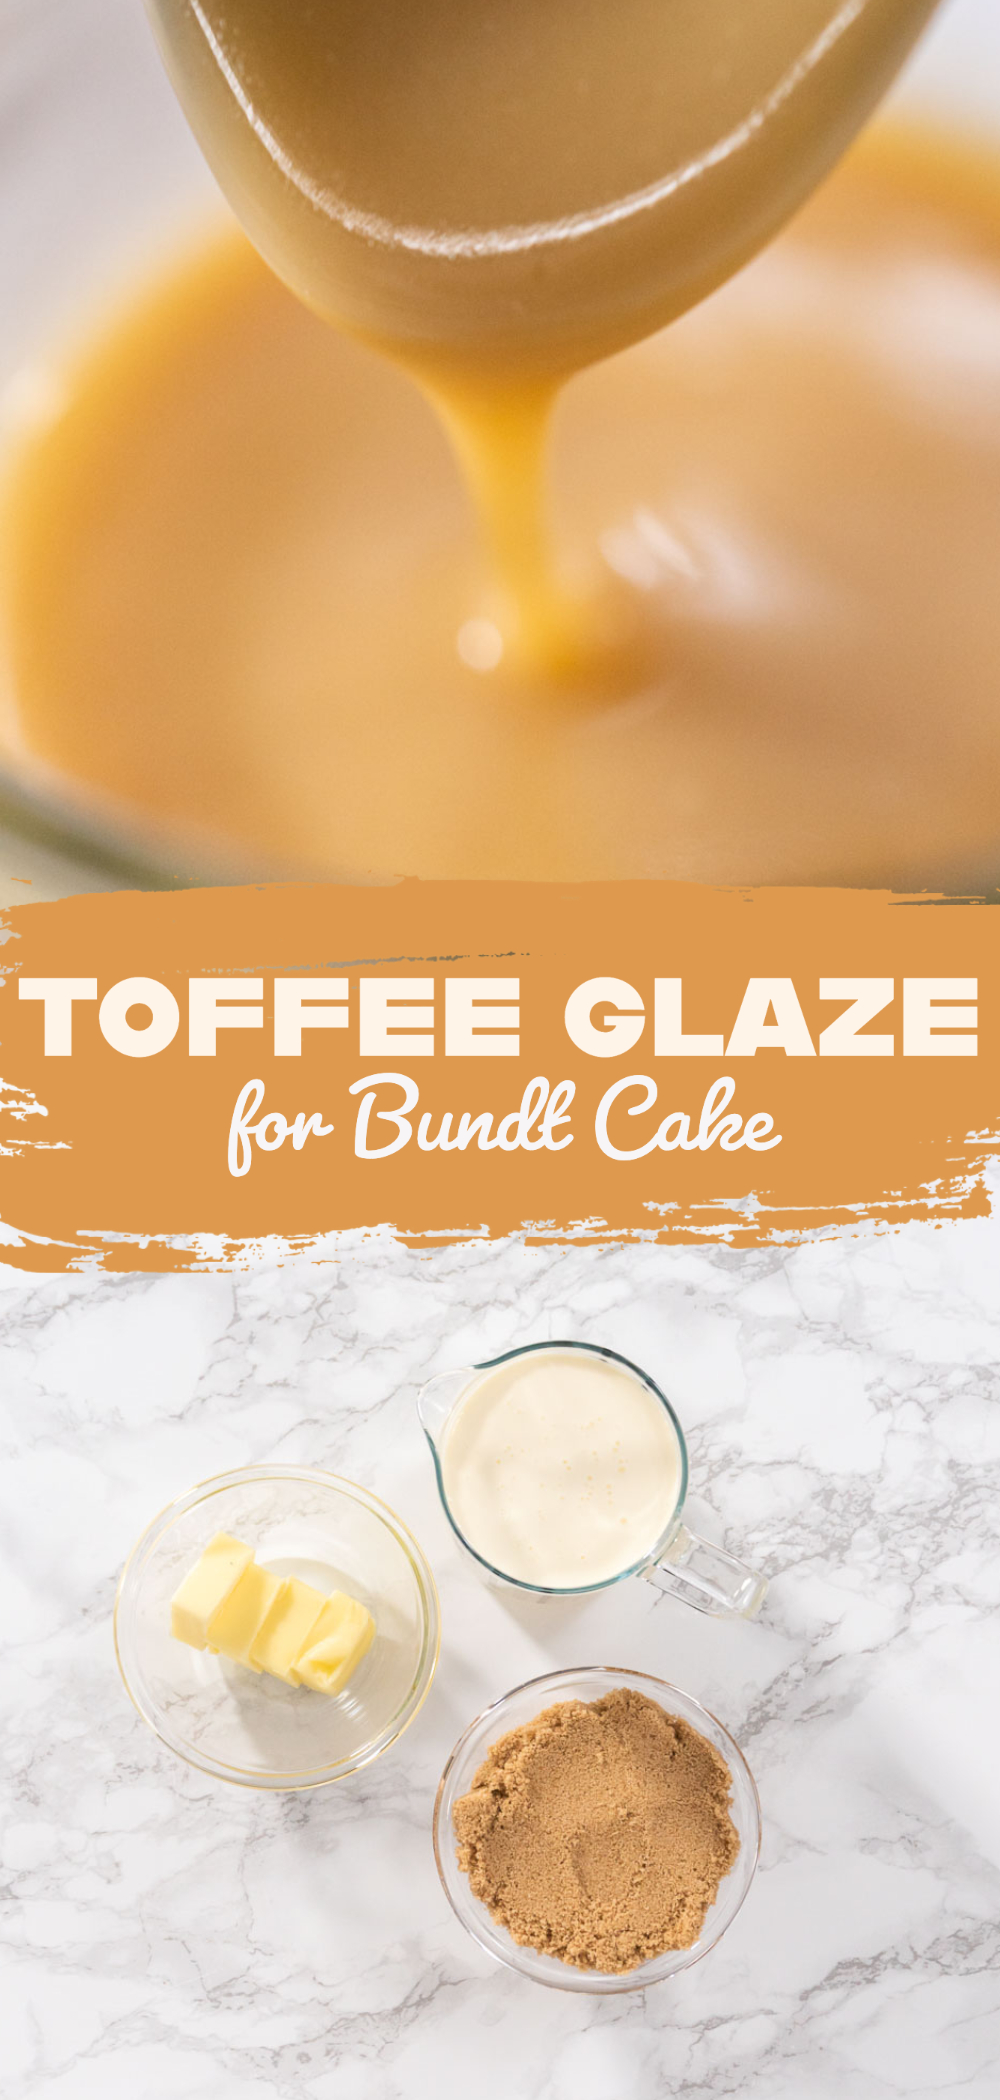 Toffee glaze for bundt cake